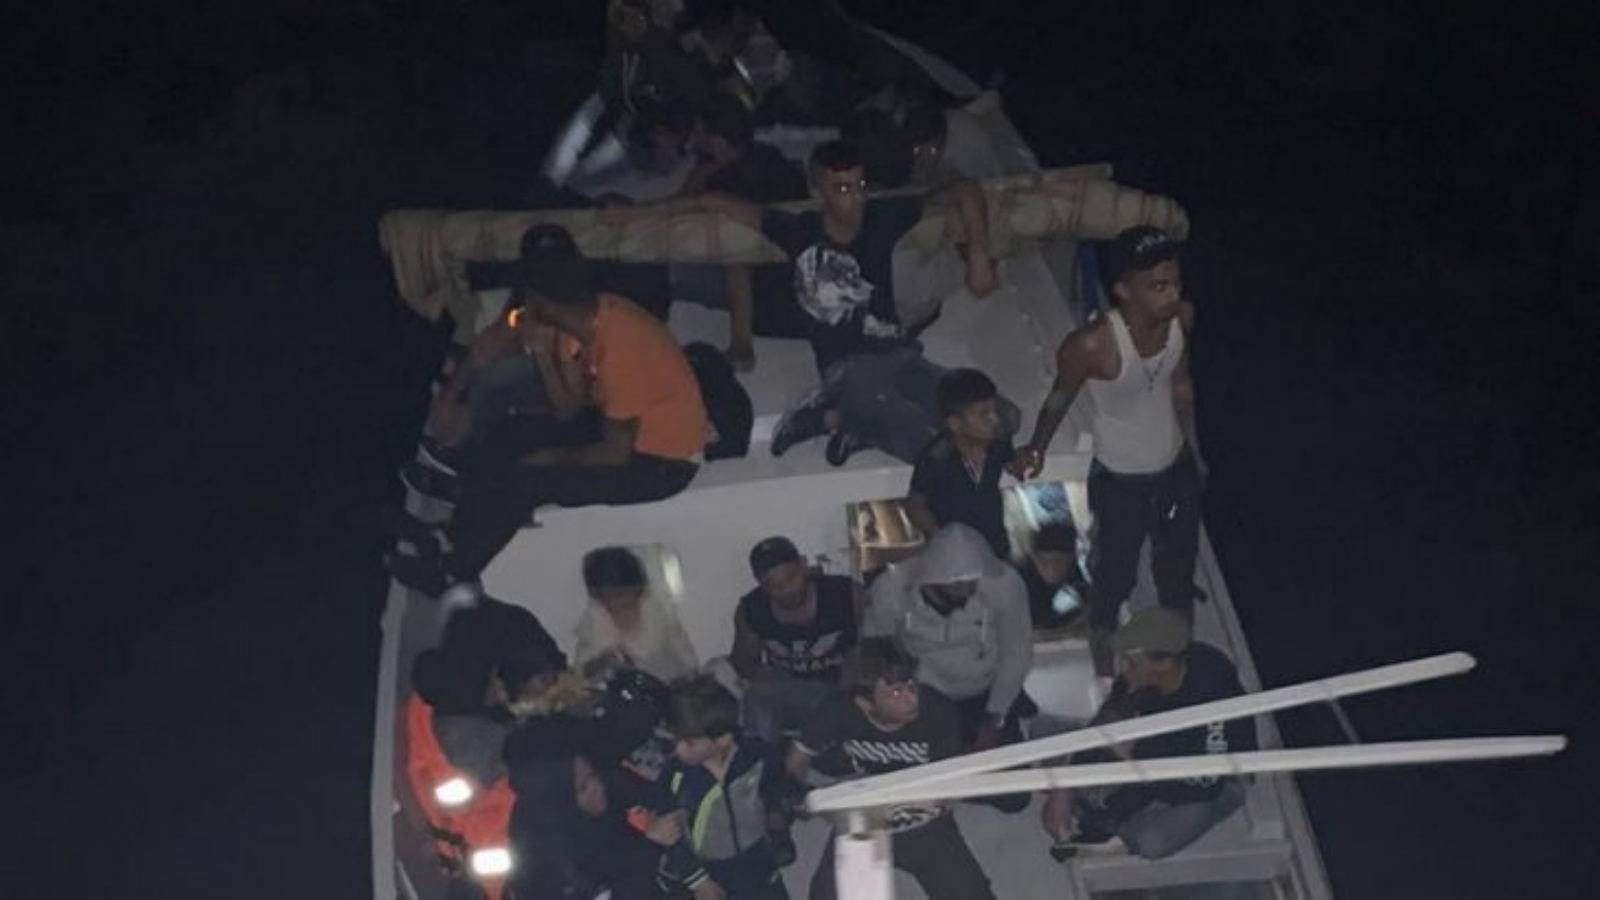 صورة وزعها الجيش اللبناني للقارب والمهاجرين